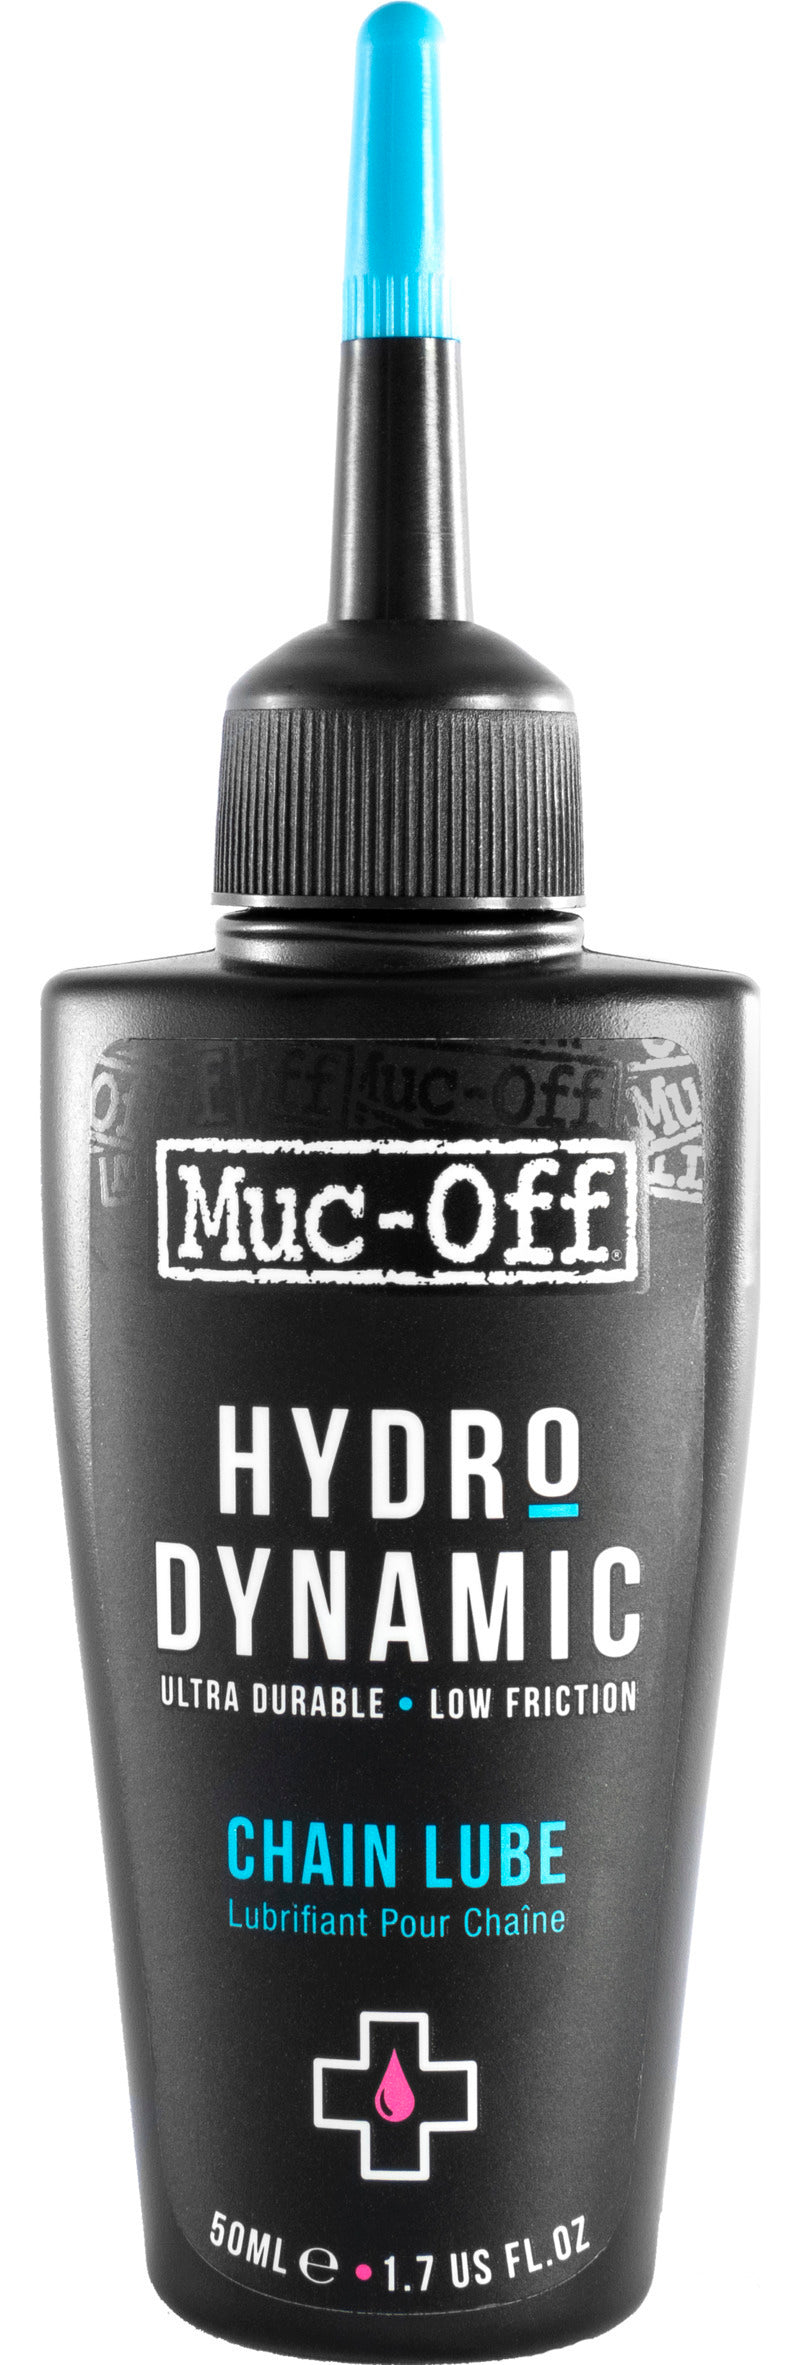 Muc-Off Hydrodynamic Chain Lube 50ml